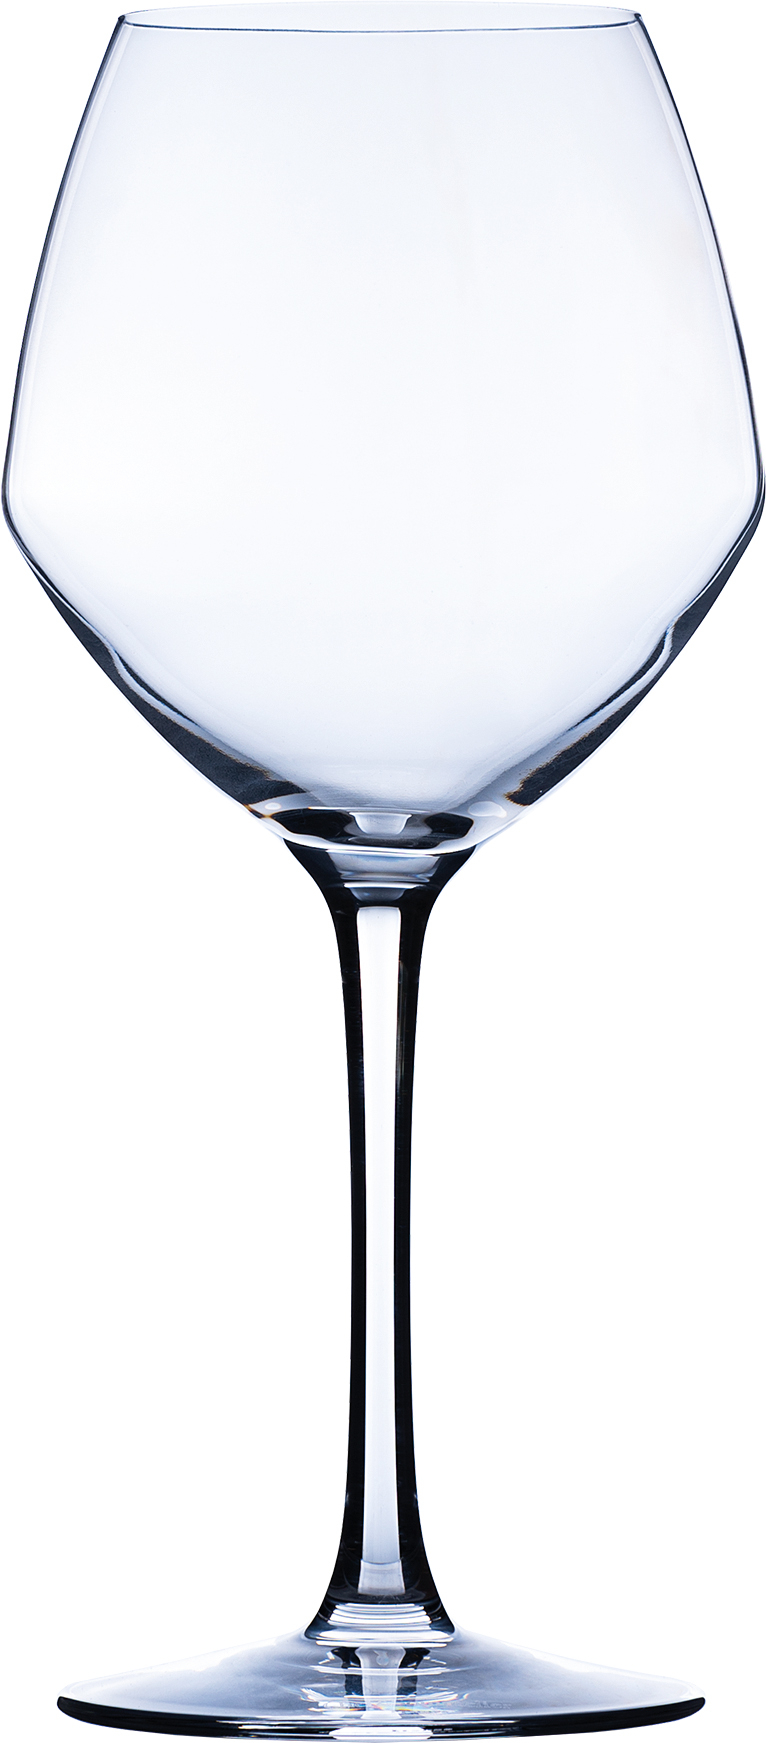 Vins Jeunes glass Cabernet, C&S - 470ml